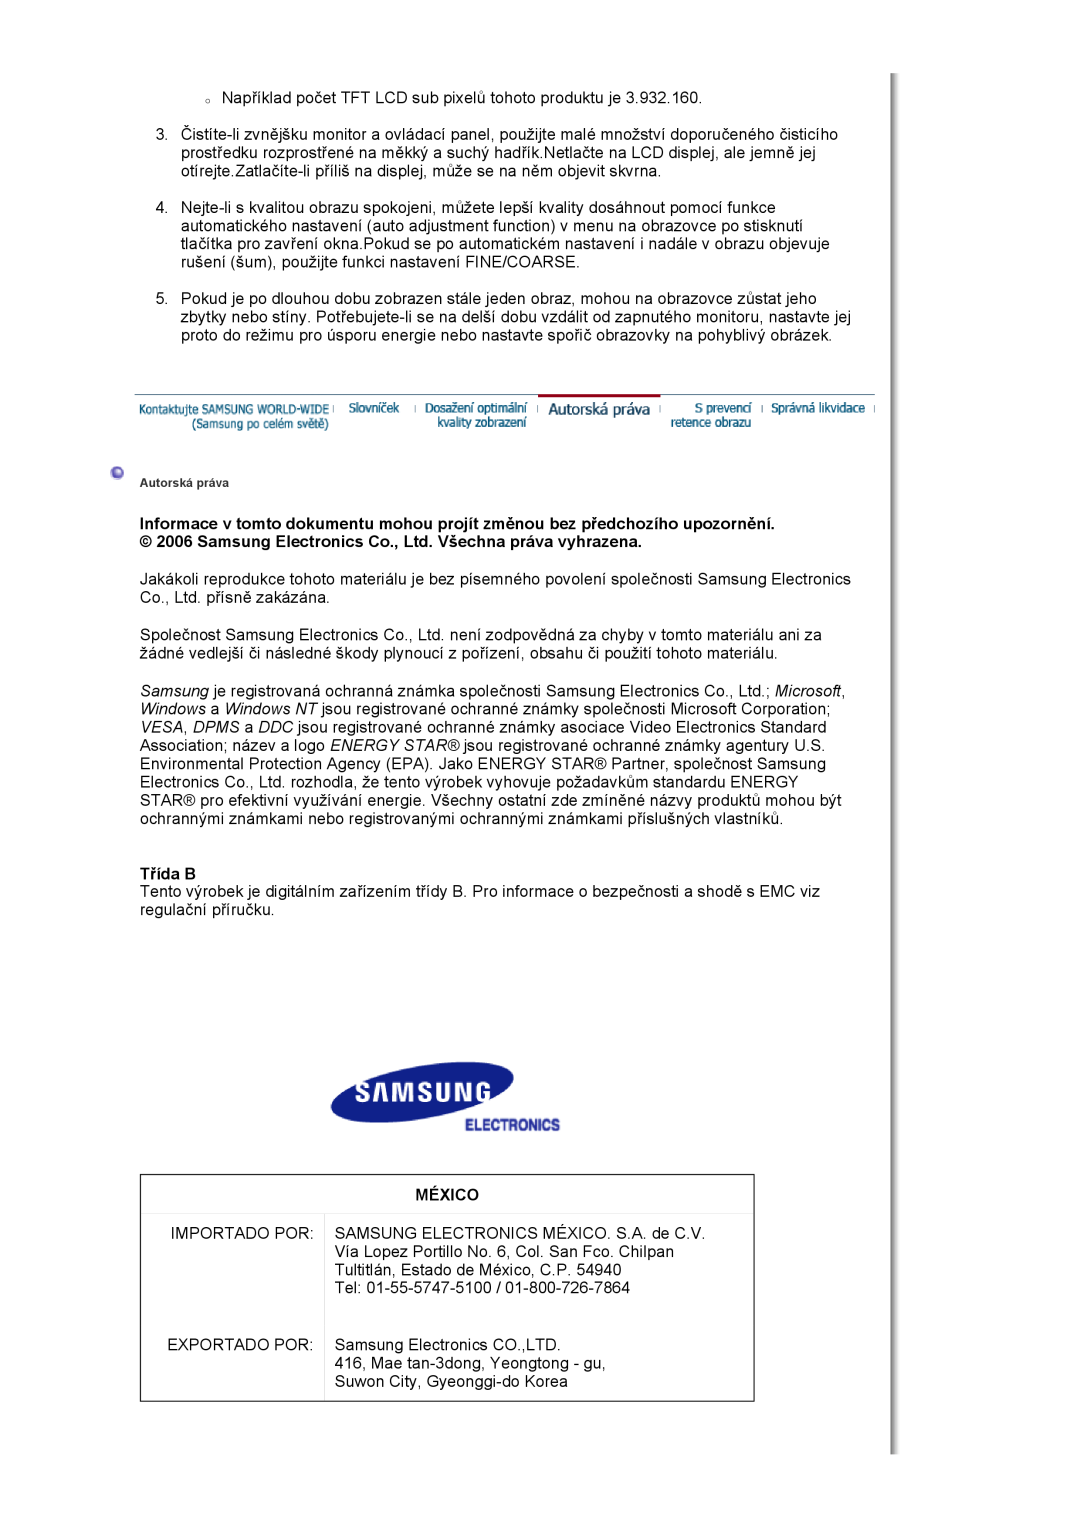 Samsung LS17HJDQHV/EDC, LS19HJDQFV/EDC, LS19HJDQHV/EDC manual Třída B, México 